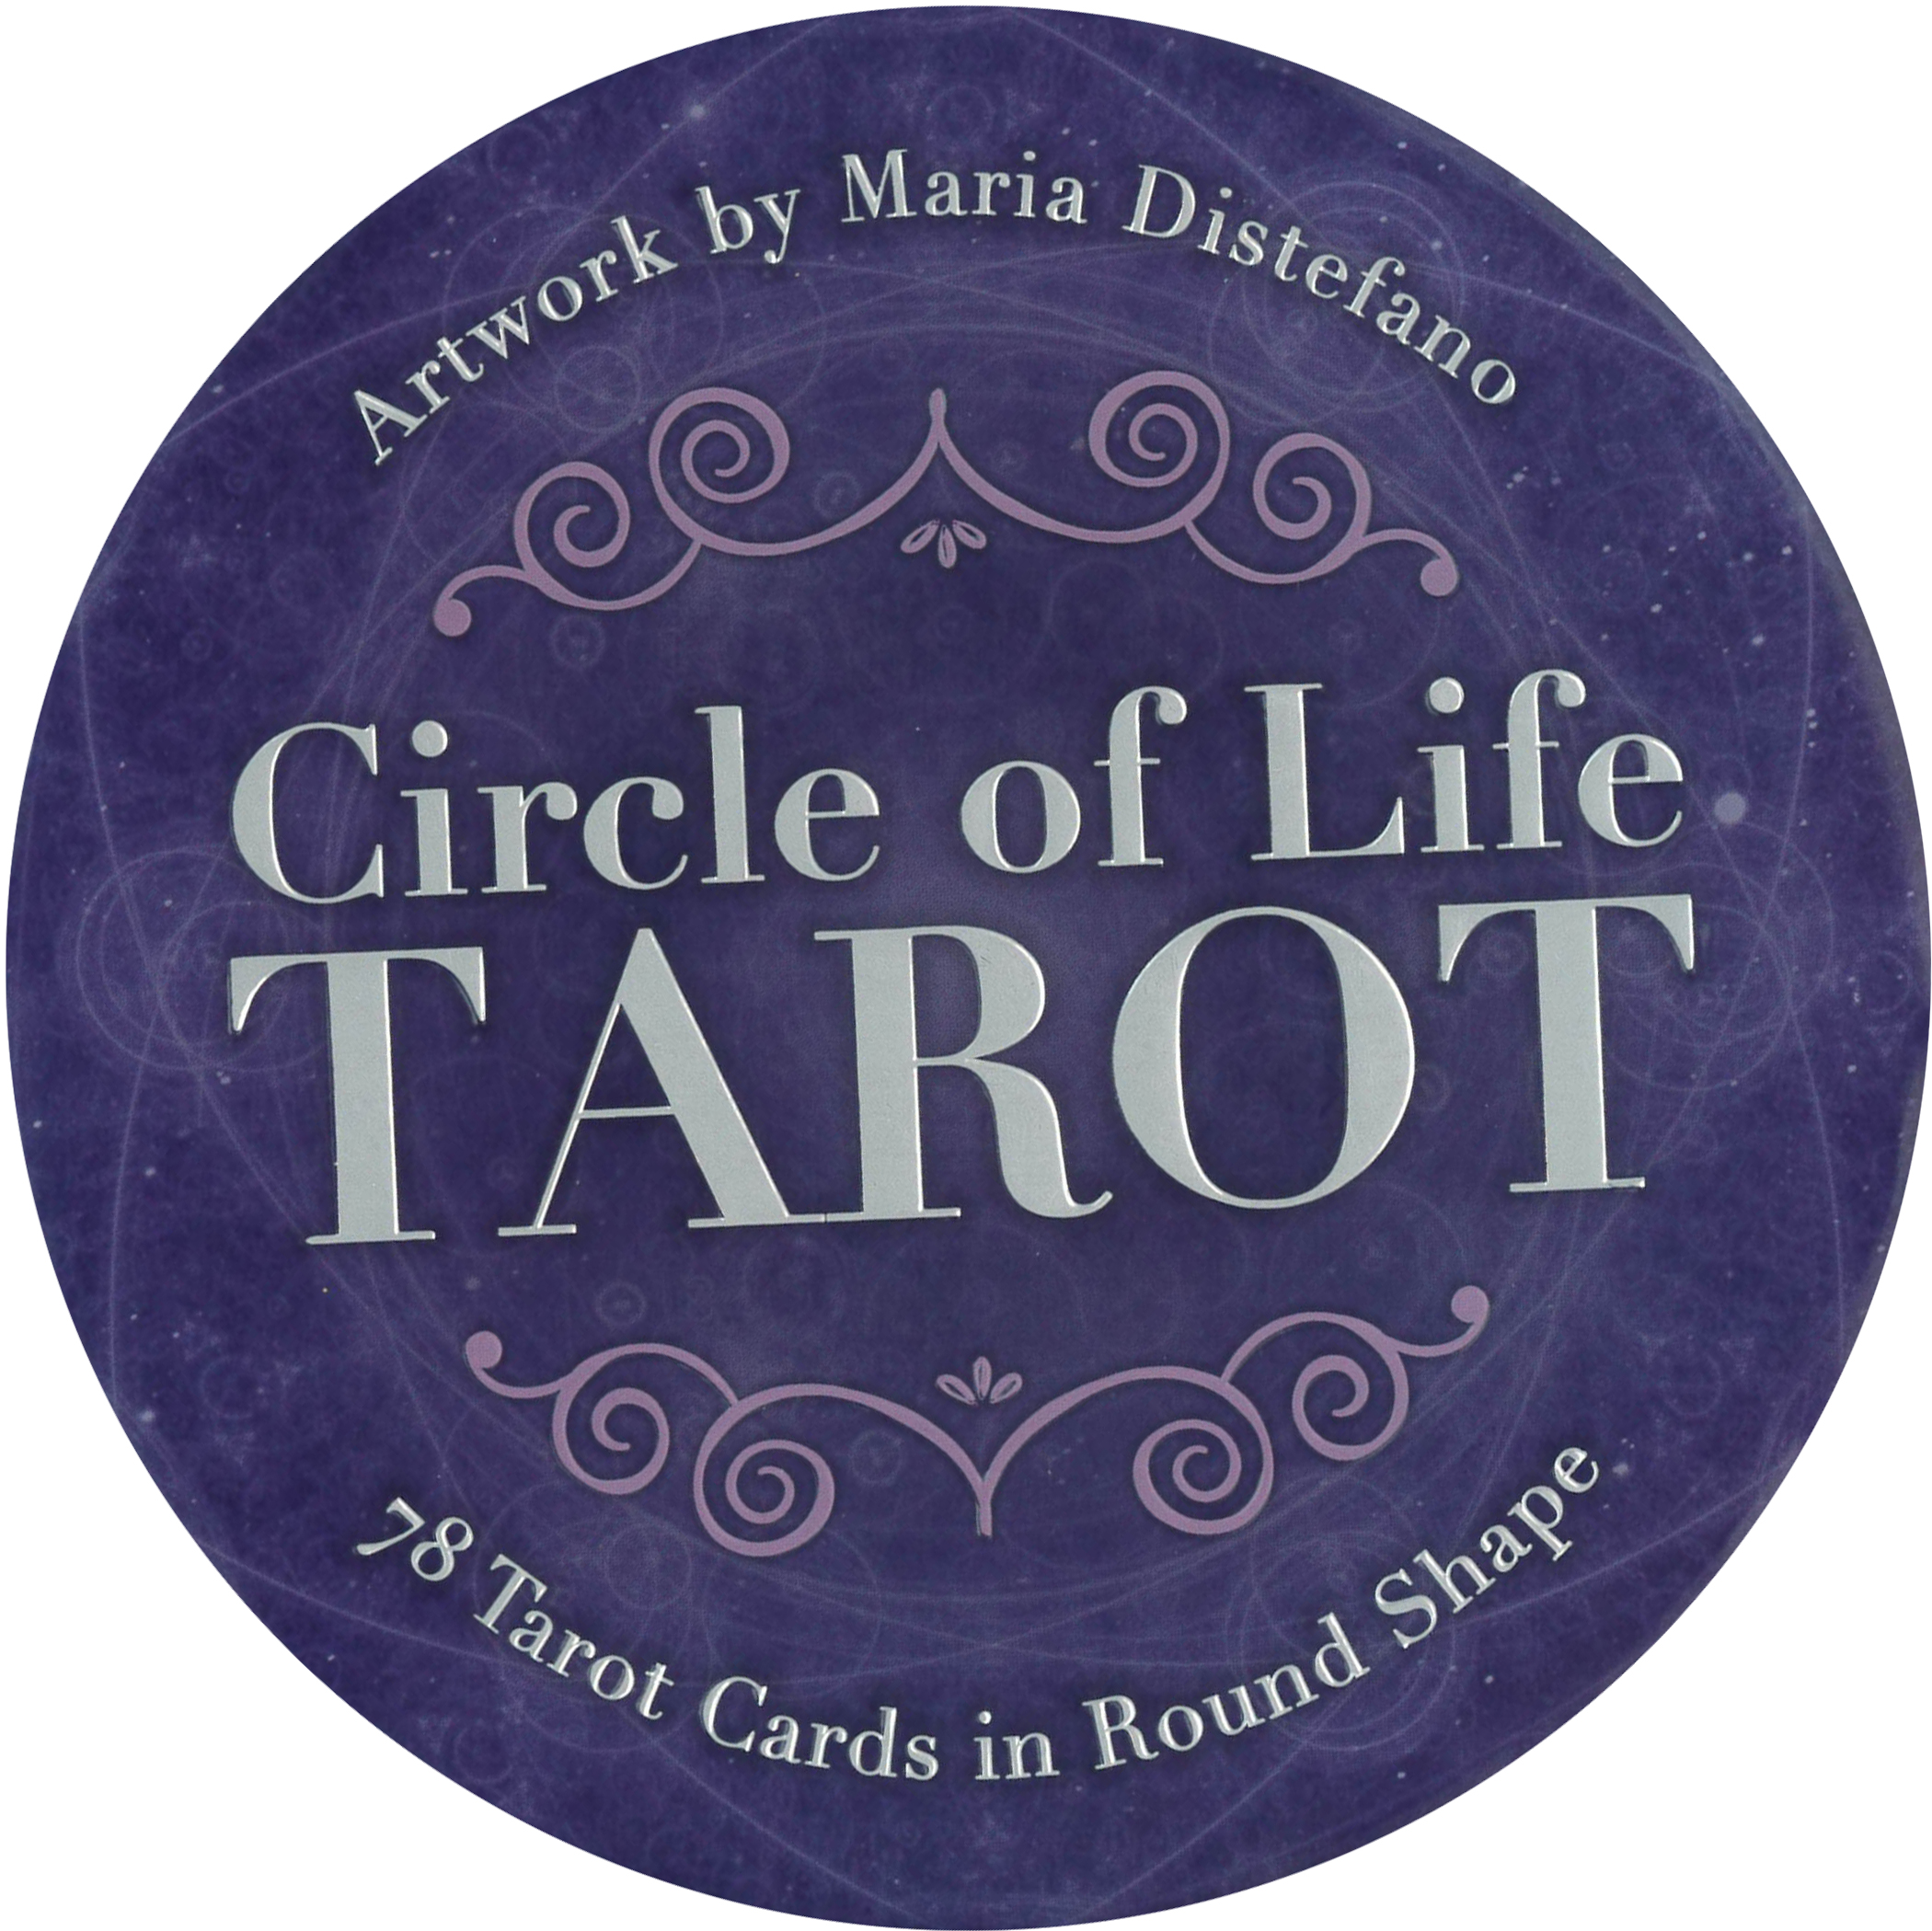 絶版❤️Art of life Tarot アートオブライフタロット - 美術品